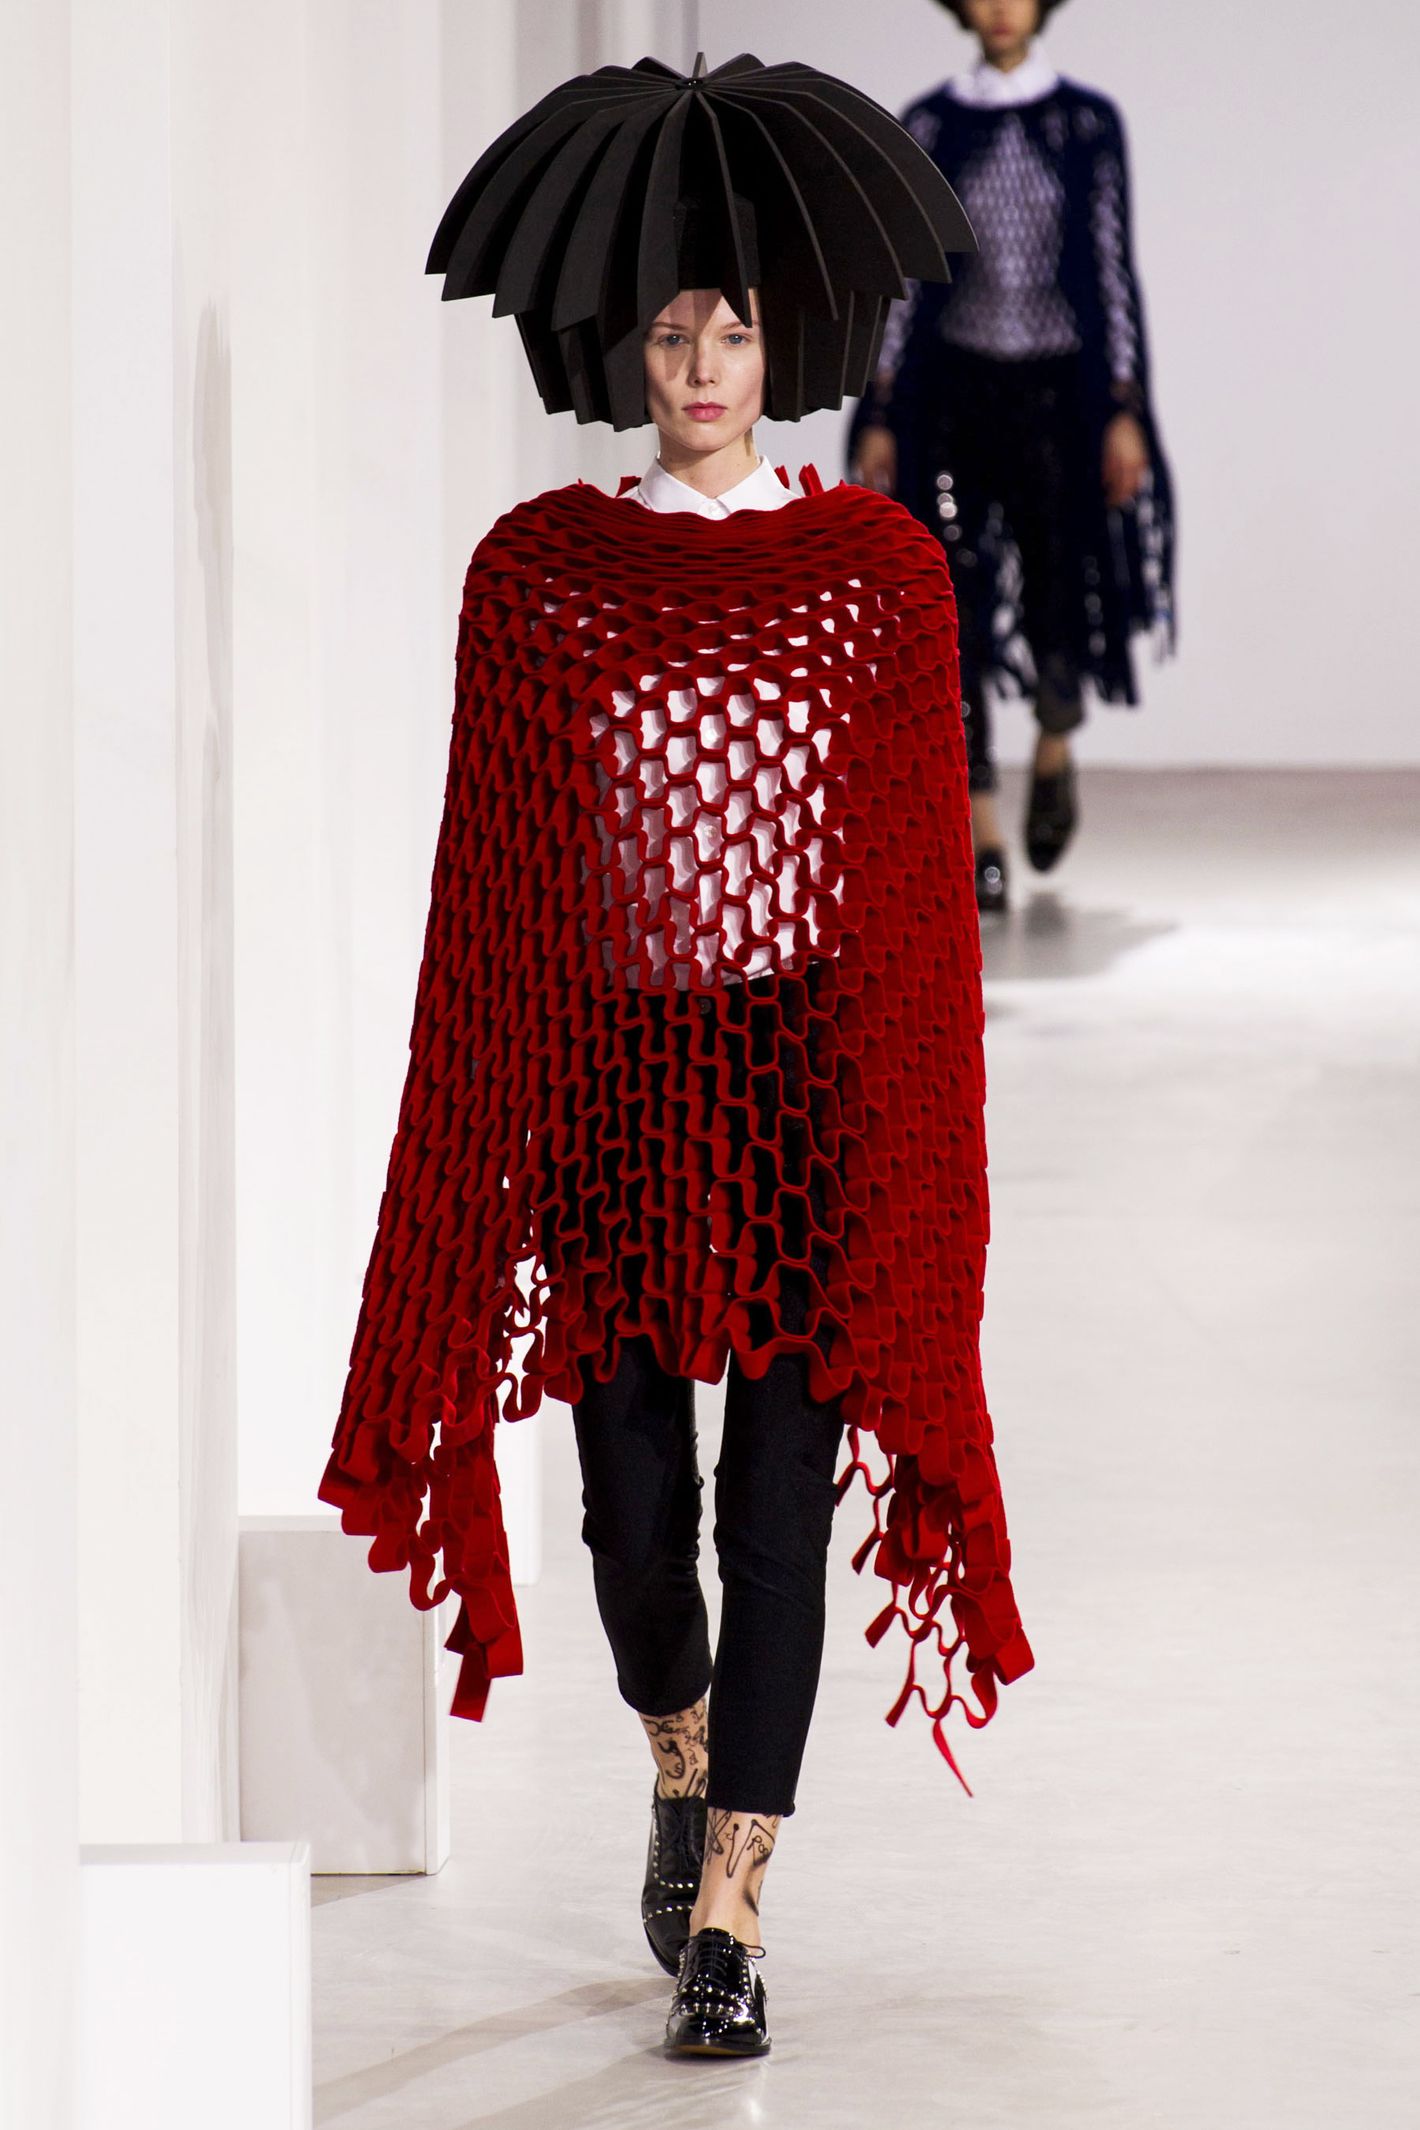 Louis Vuitton celebrates individuality at Paris Fashion Week